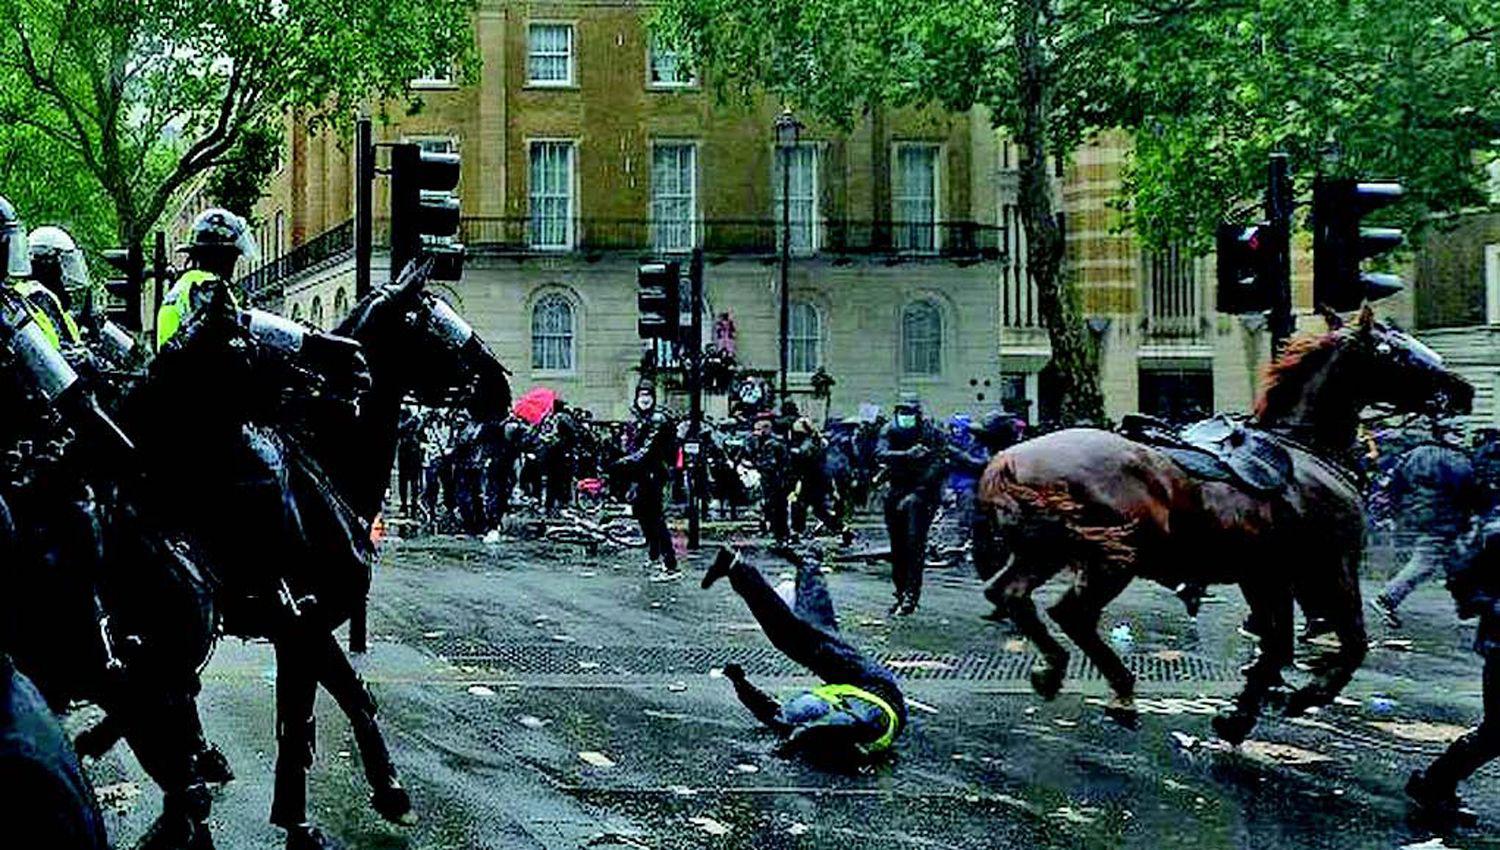 Manifestantes se enfrentaron con la policiacutea en el centro de Londres durante una marcha contra el racismo